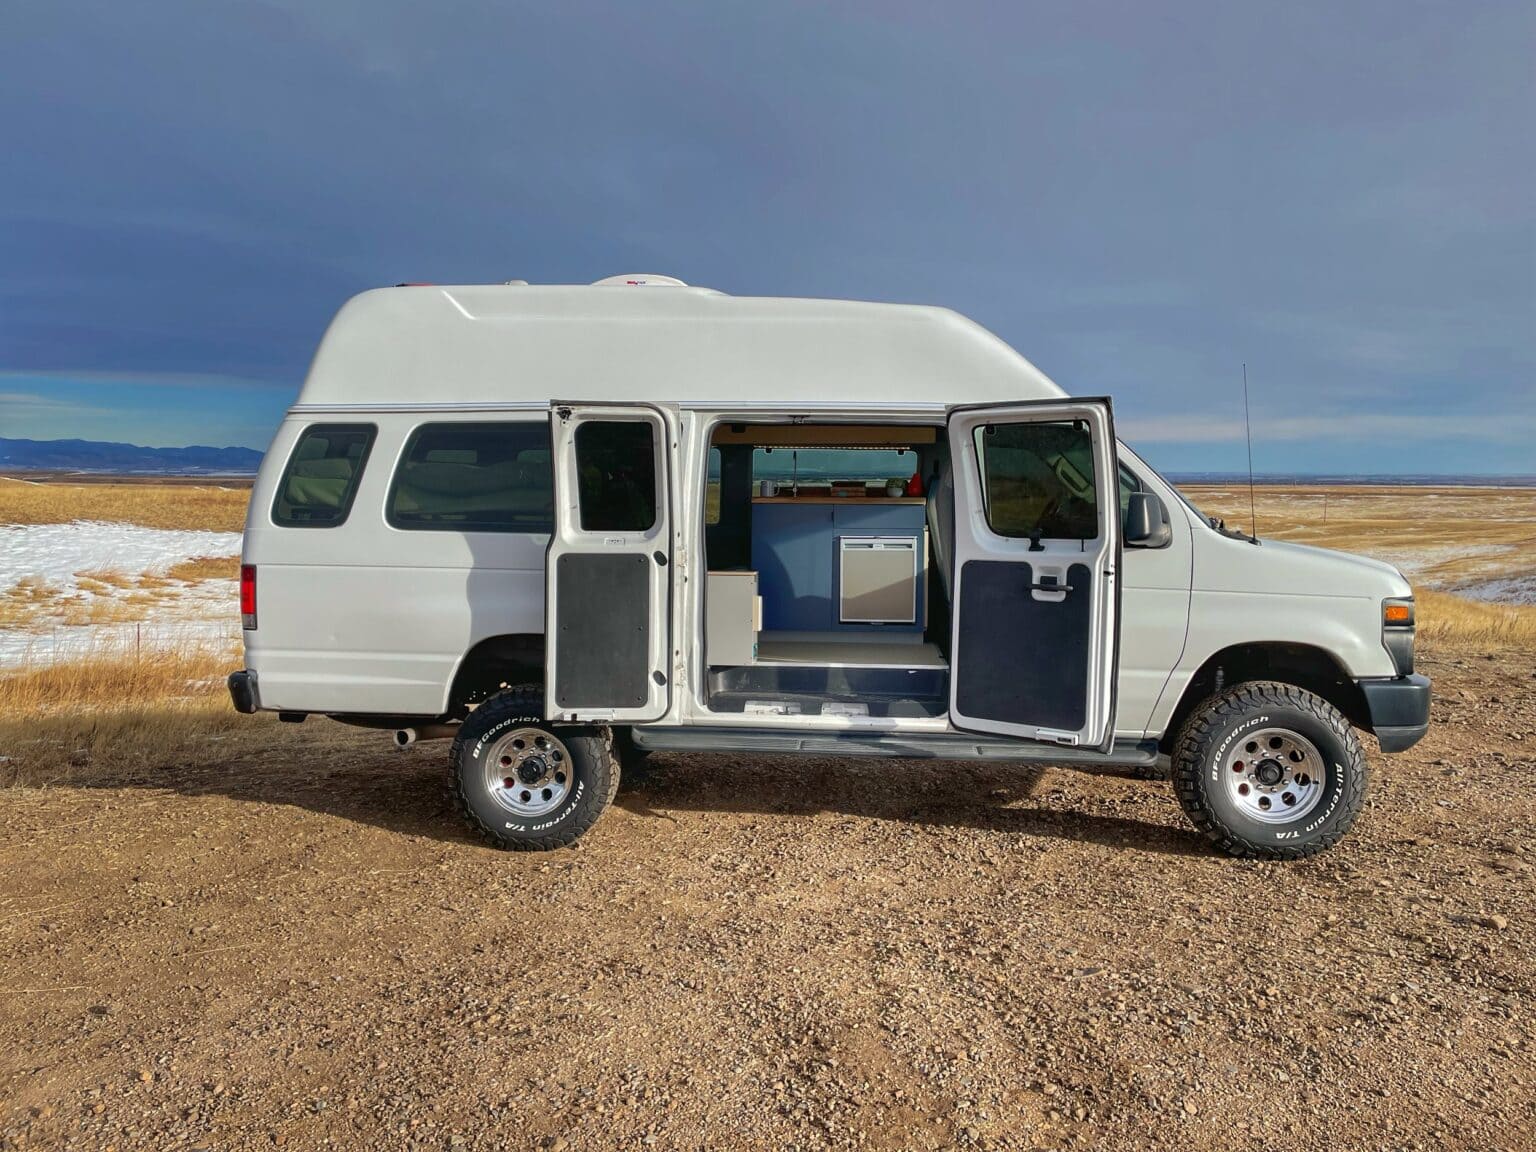 Ford Econoline Family Campervan Conversion - Contravans